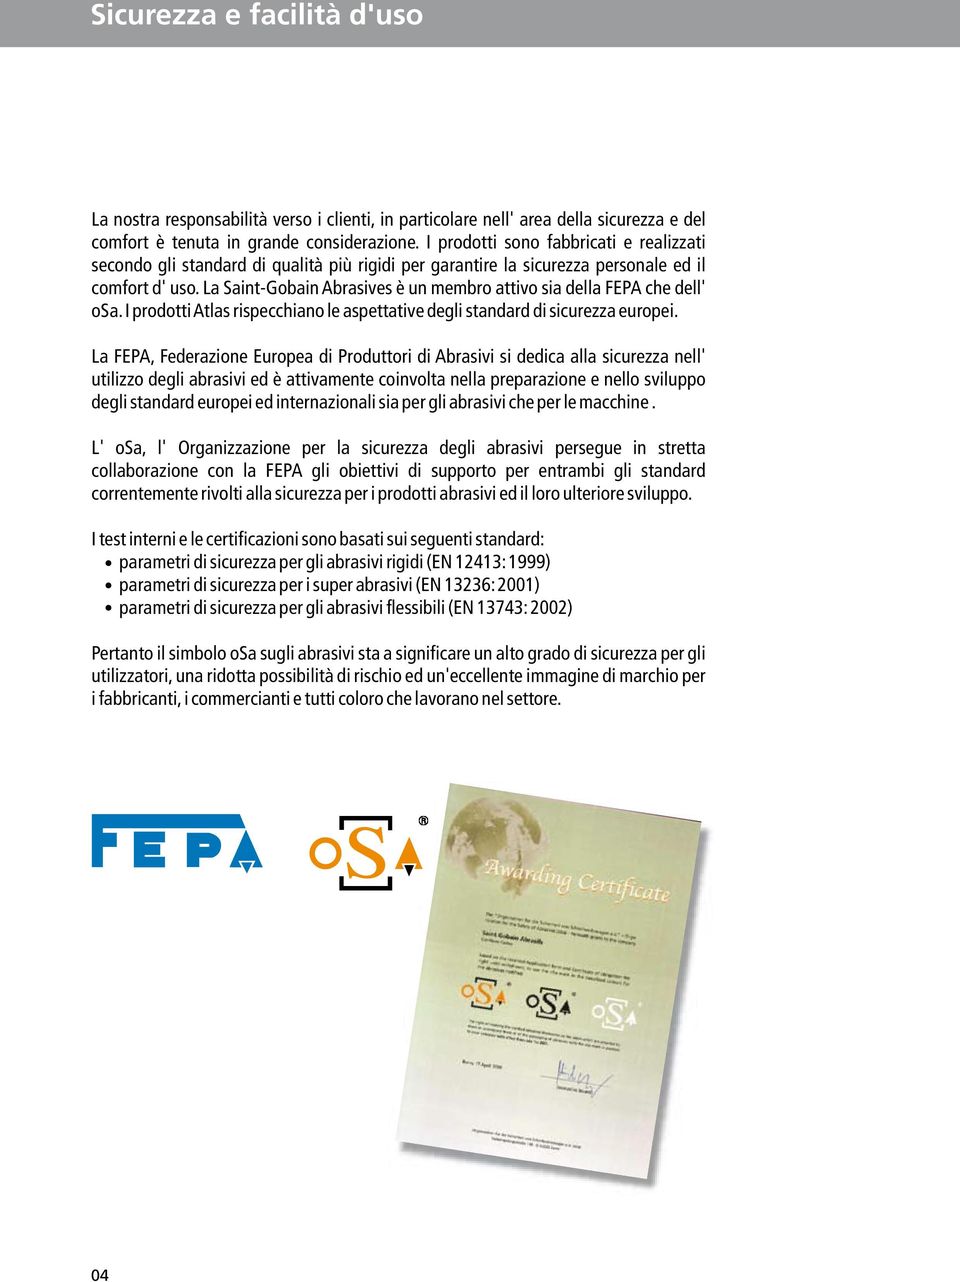 La Saint-Gobain Abrasives è un membro attivo sia della FEPA che dell' osa. I prodottiatlas rispecchiano le aspettative degli standard di sicurezza europei.